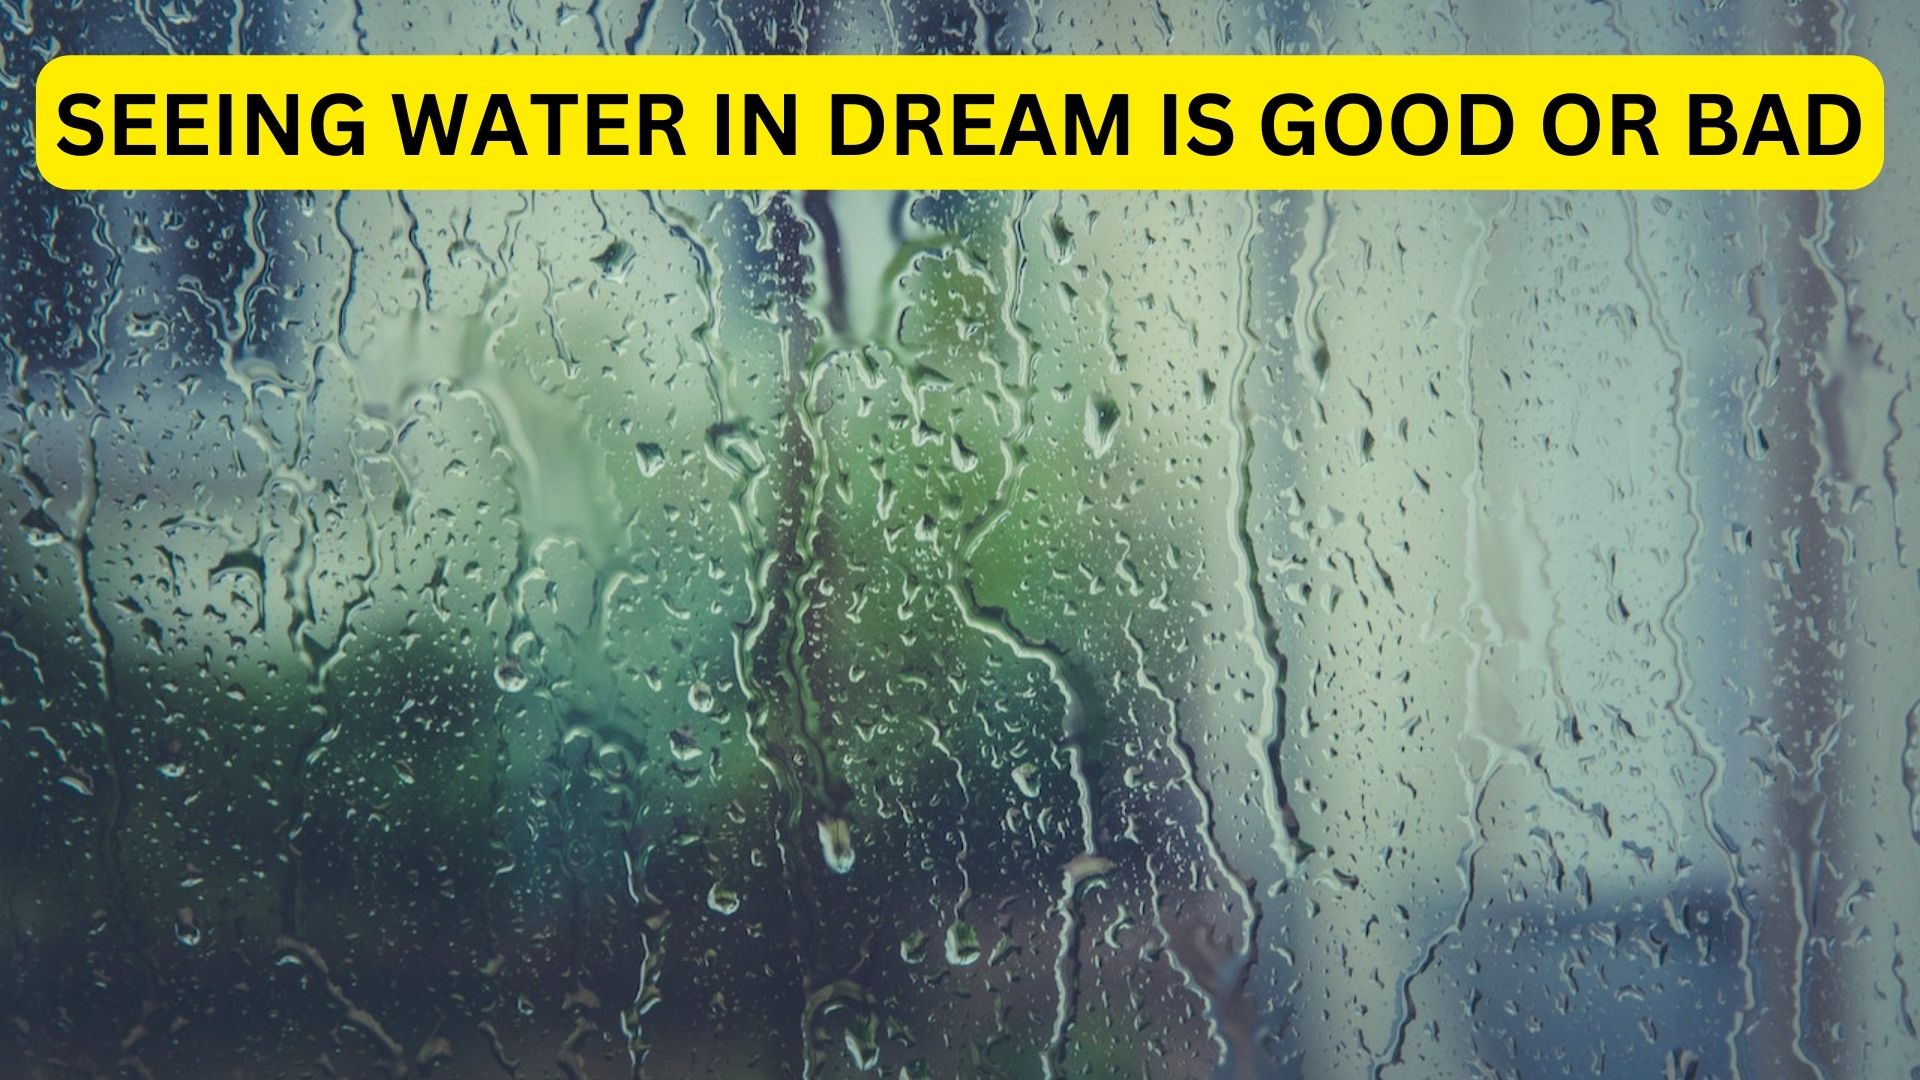 Je li vidjeti vodu u snu dobro ili loše? Saznajte sada